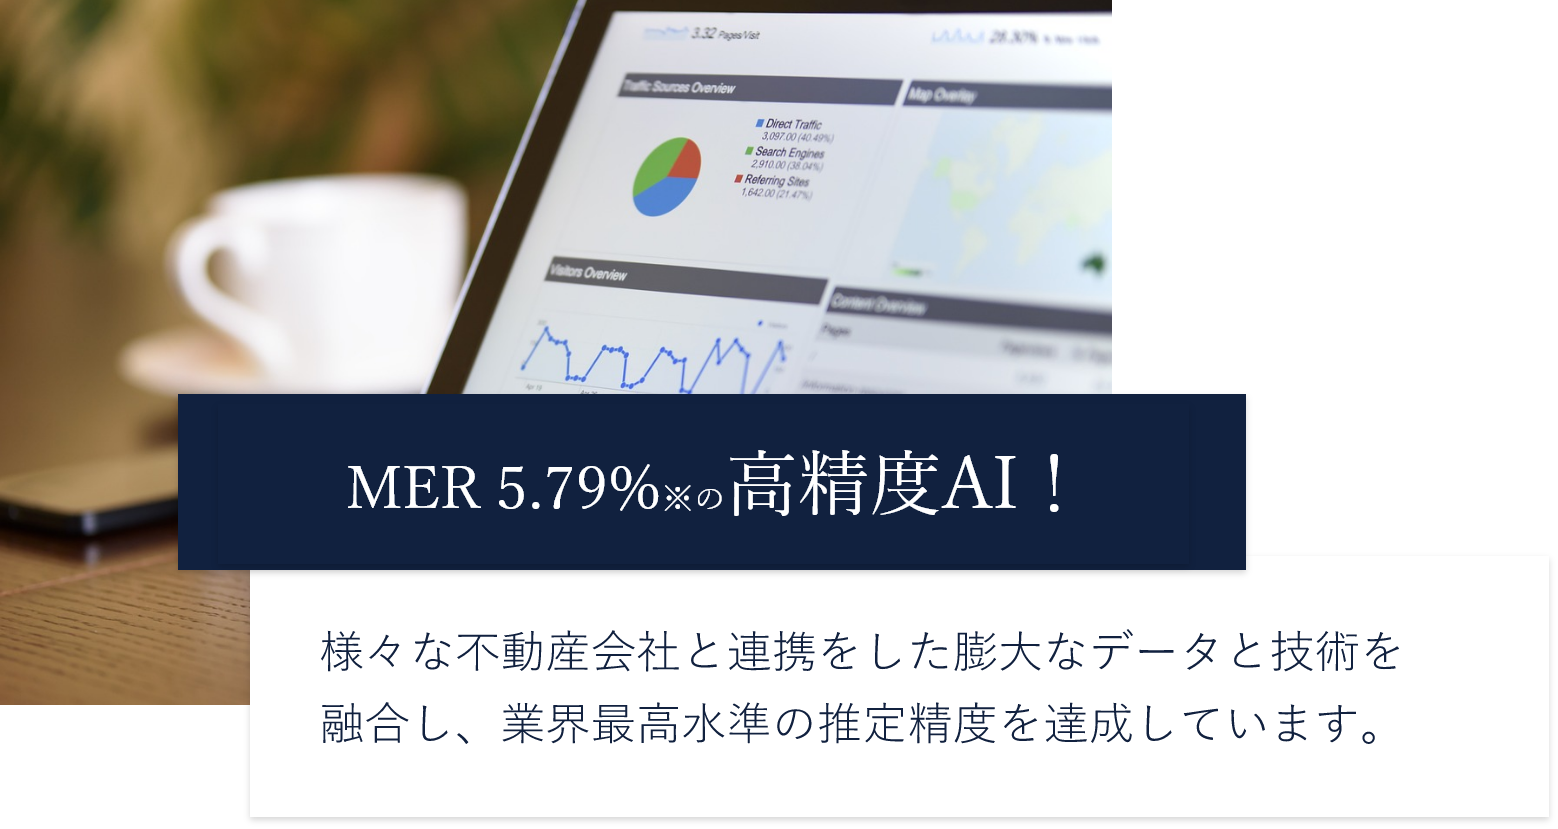 MER※1 5.79%※2の高精度AI！ 様々な不動産会社と連携をした膨大なデータと技術を
              融合し、業界最高水準の推定精度を達成しています。